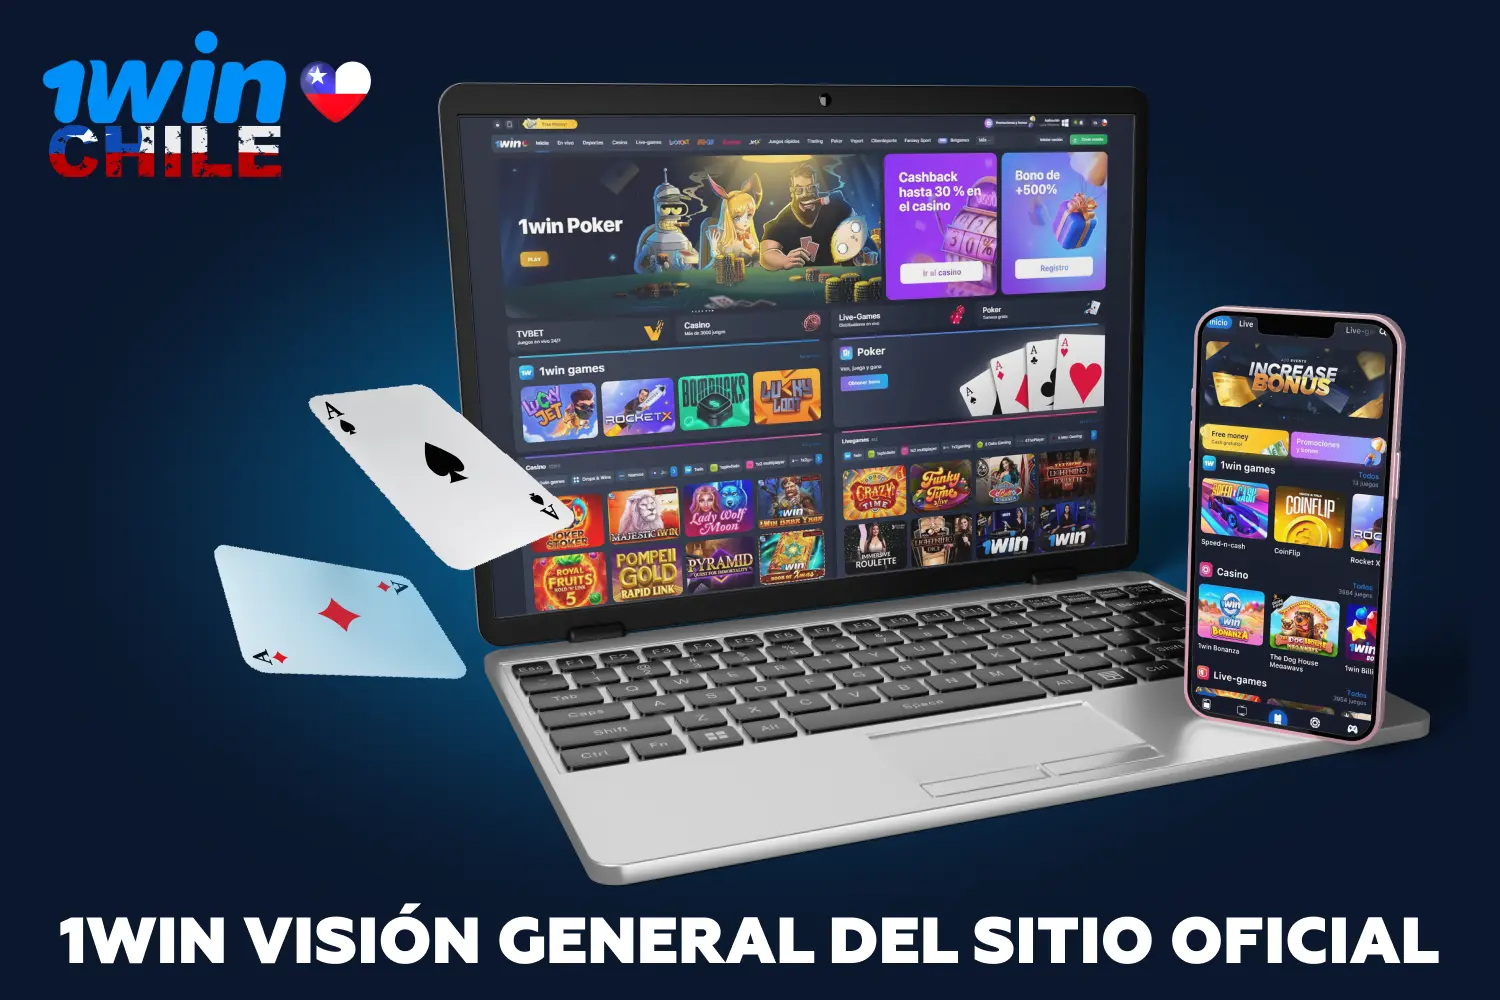 El sitio oficial de 1win en Chile tiene un diseño agradable, y ofrece apuestas deportivas, servicios de casino y una gama de juegos en línea